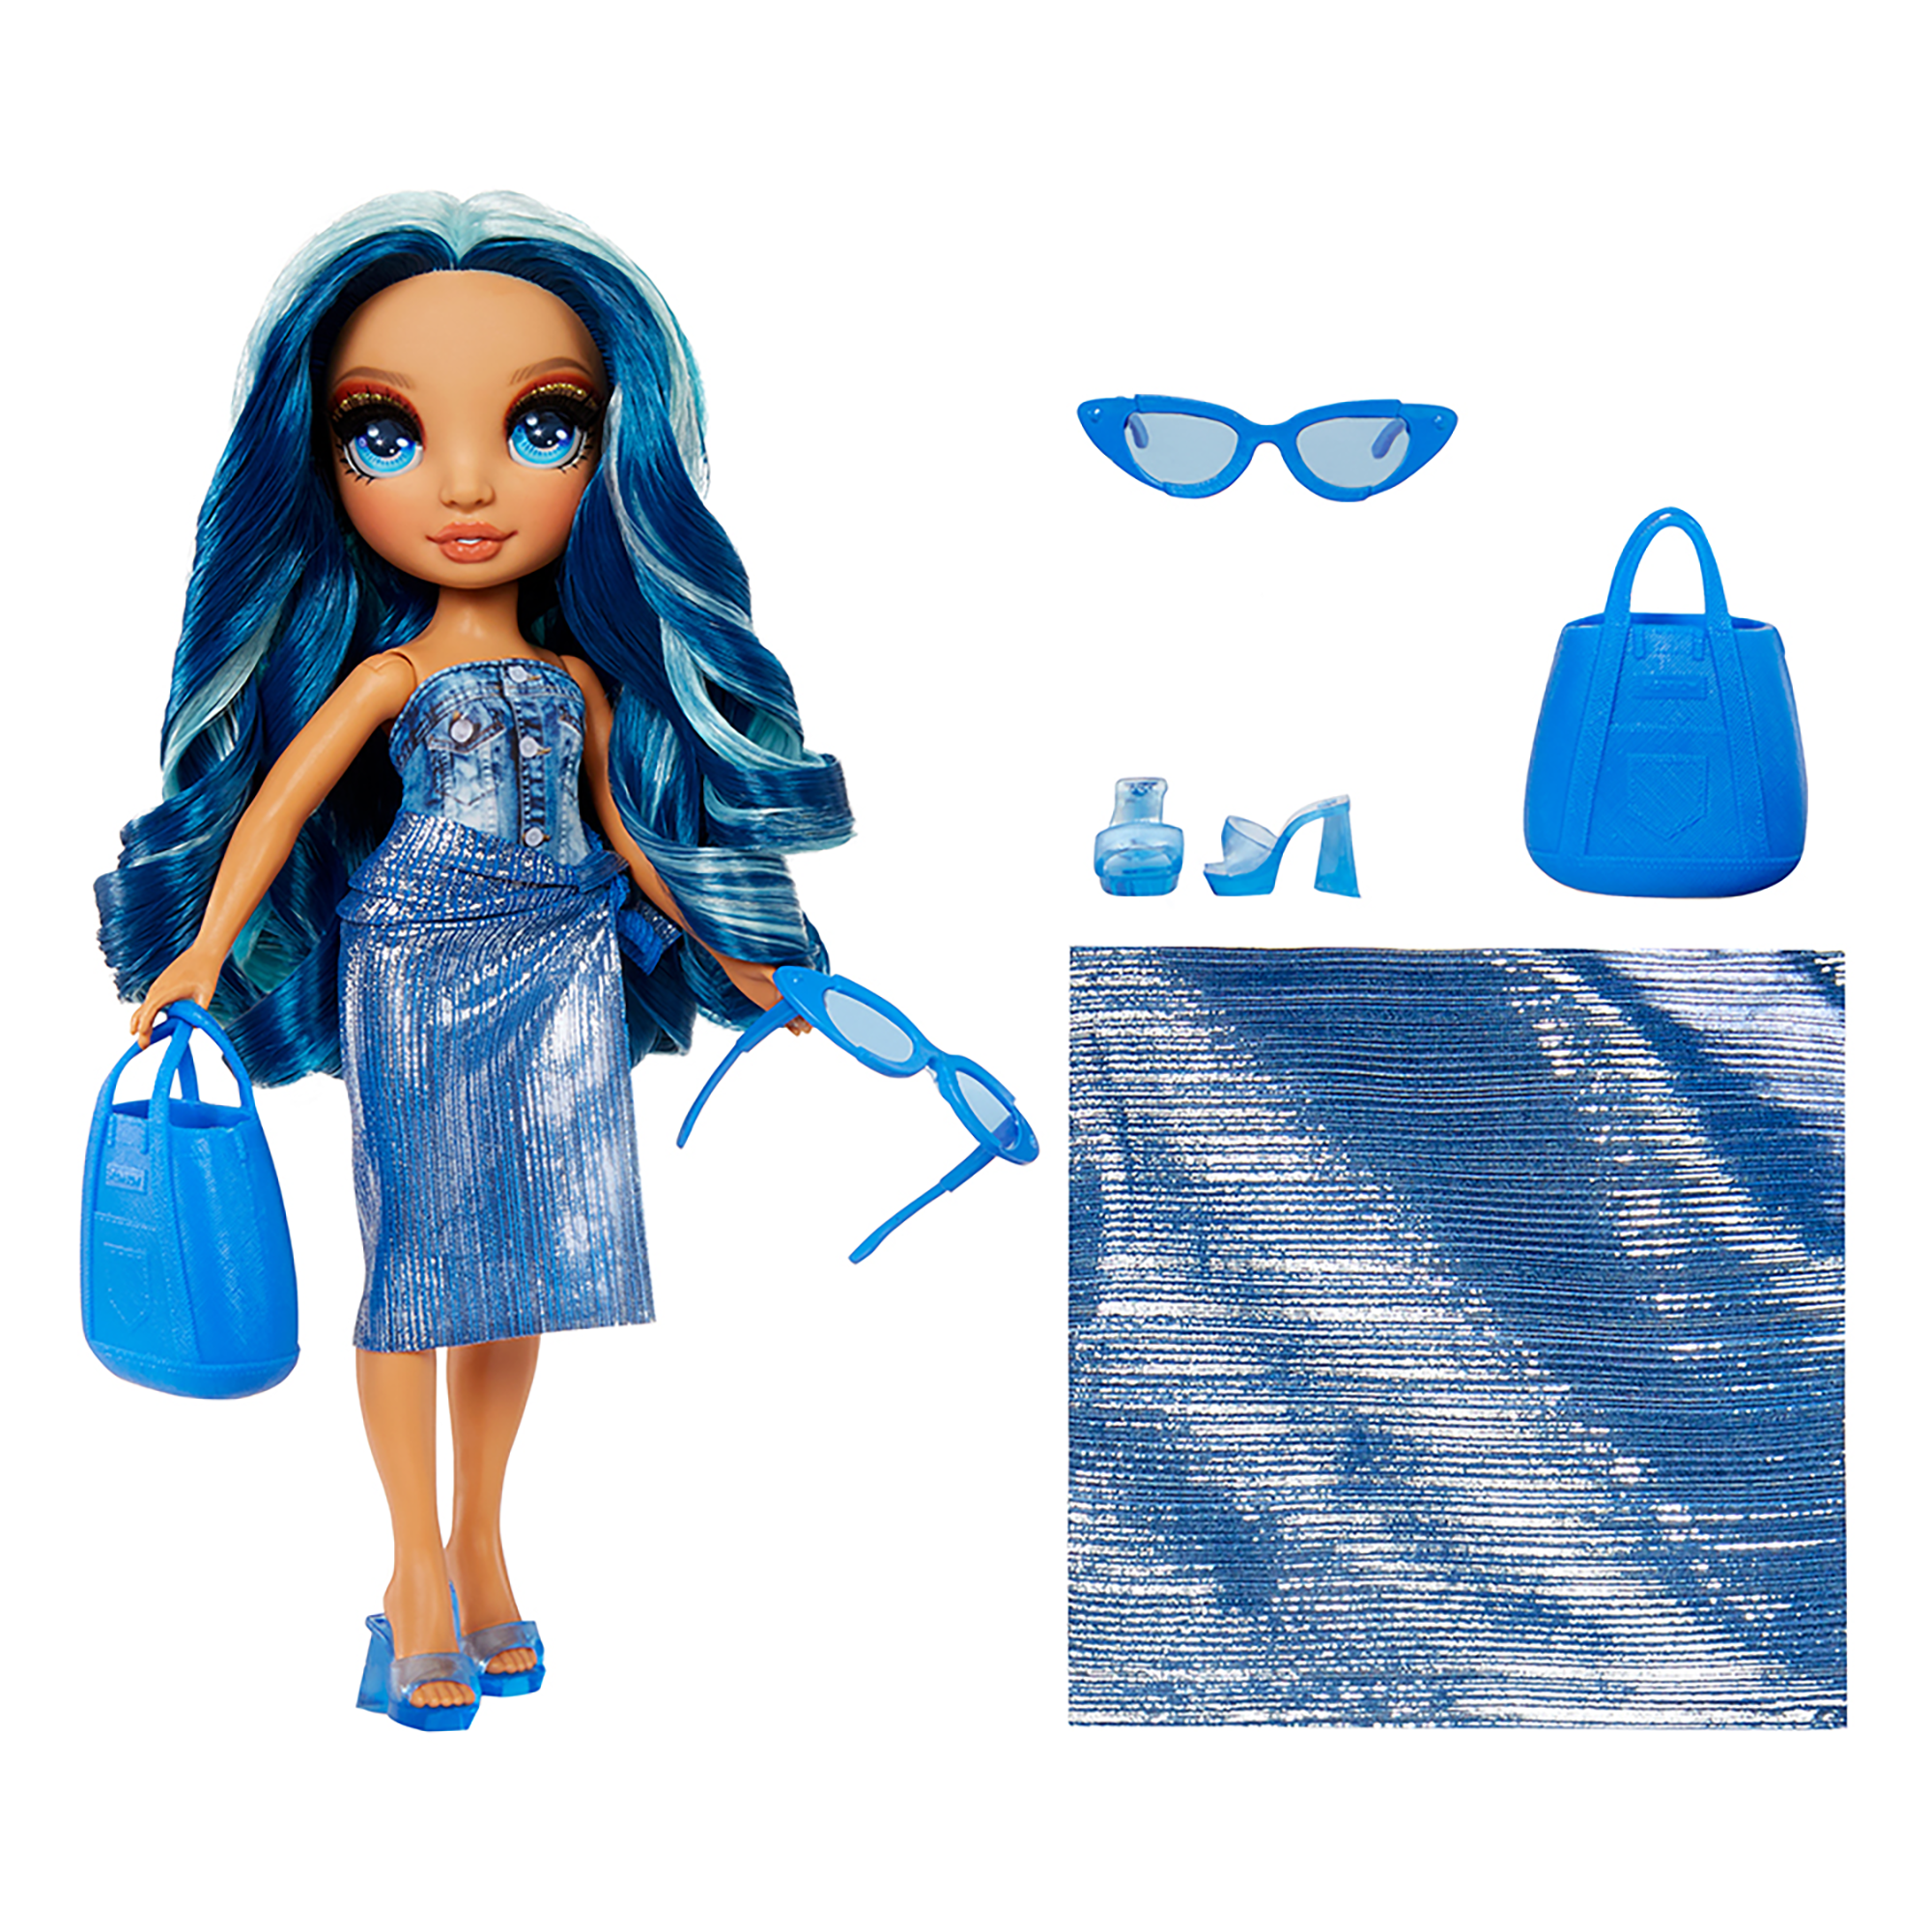 Rainbow high swim & style - skyler (blu) - bambola da 28 cm con confezione scintillante e oltre 10 outfit - costume da bagno rimovibile, sandali, accessori divertenti - Rainbow High